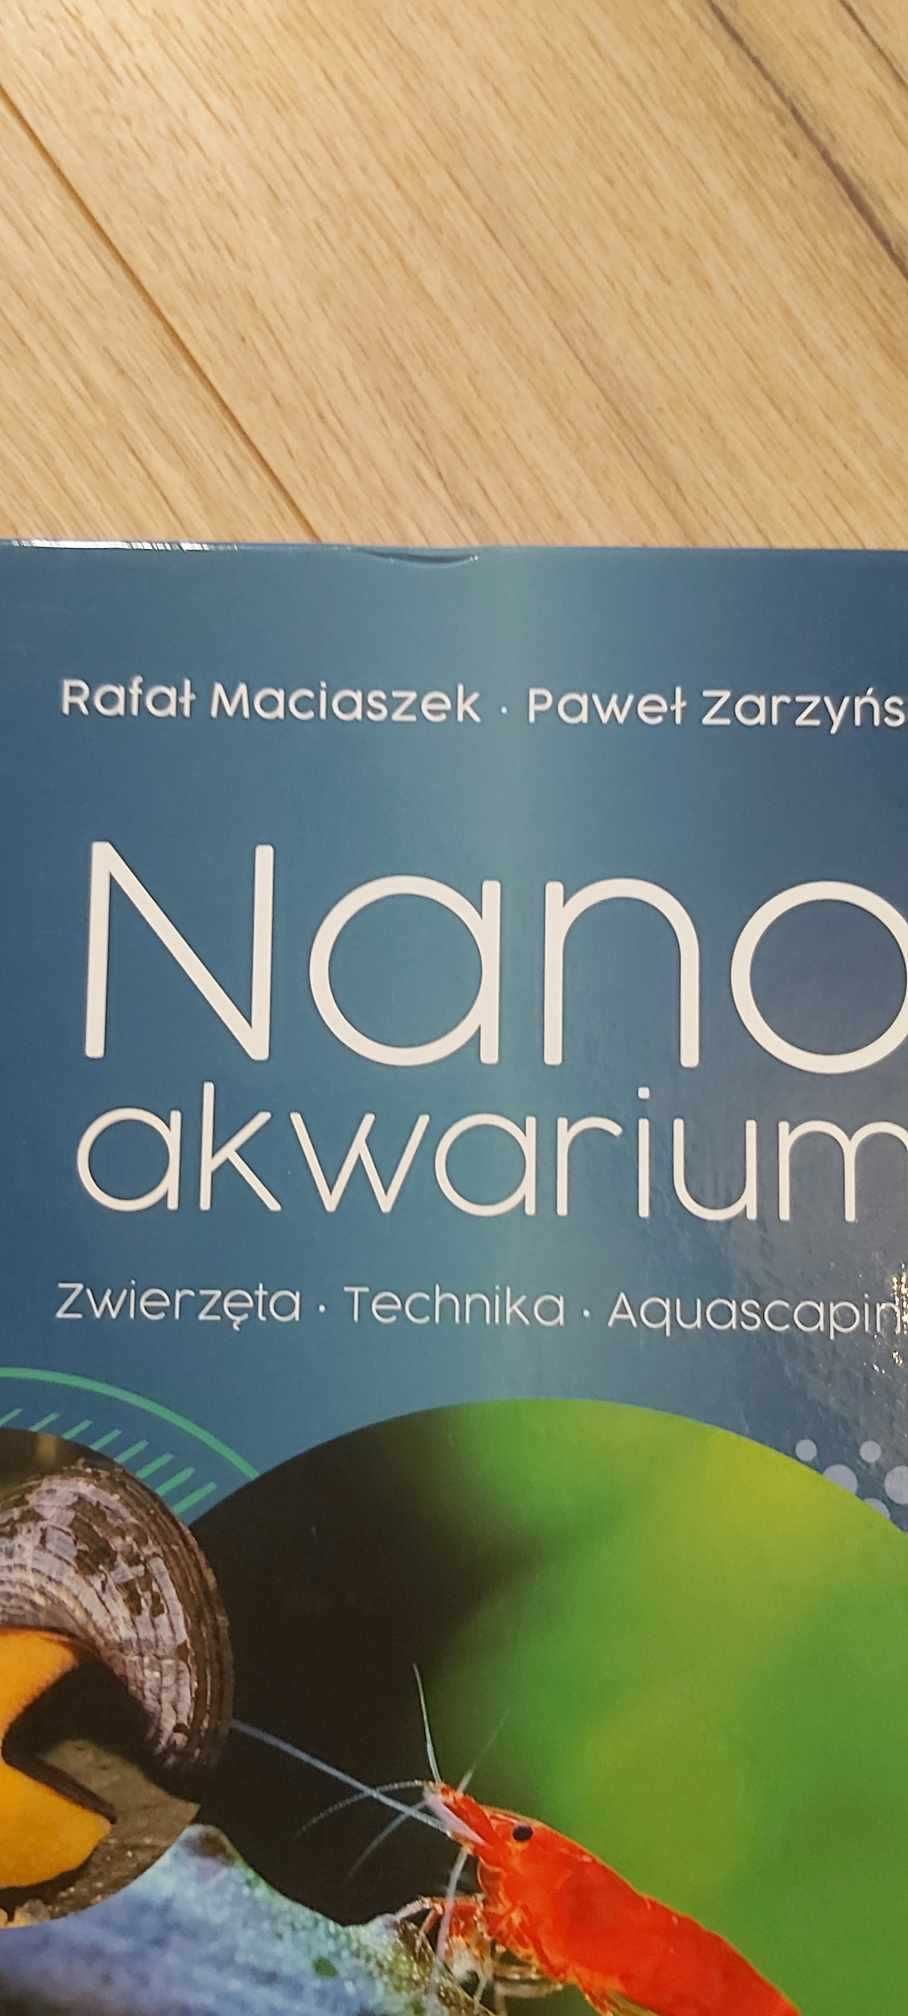 Nano akwarium Nowa Maciaszek Rafał Zarzyński Paweł